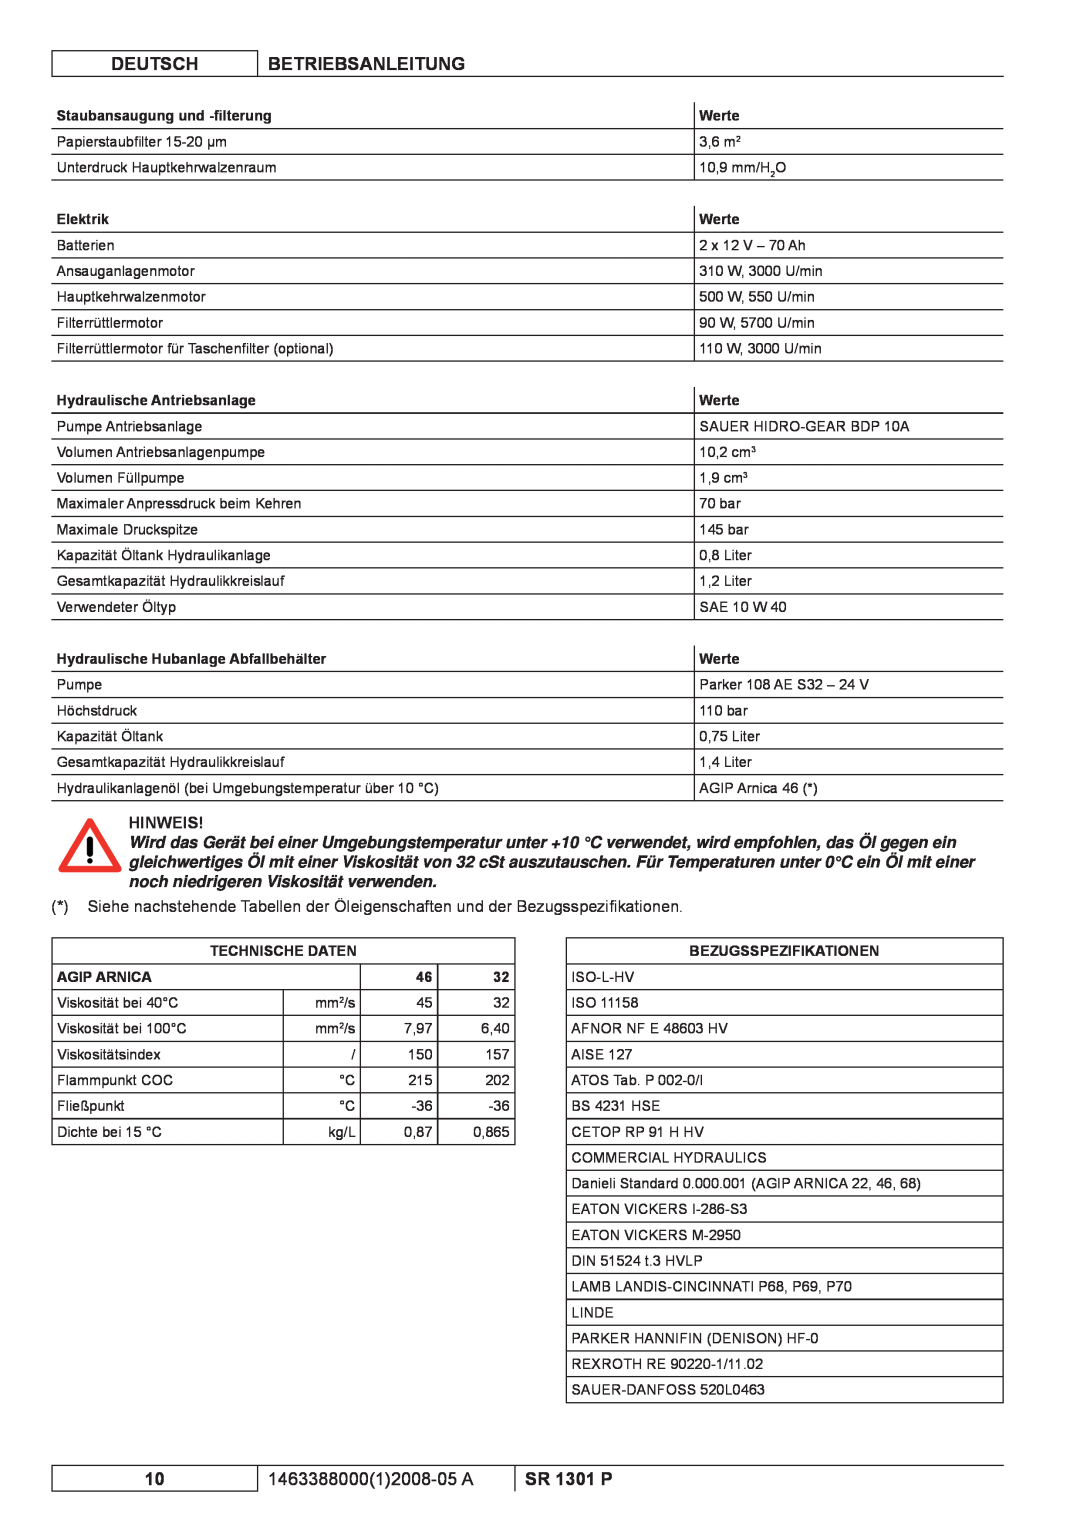 Nilfisk-ALTO SR 1301 P manuel dutilisation Deutsch, Betriebsanleitung, 146338800012008-05 A, Hinweis 